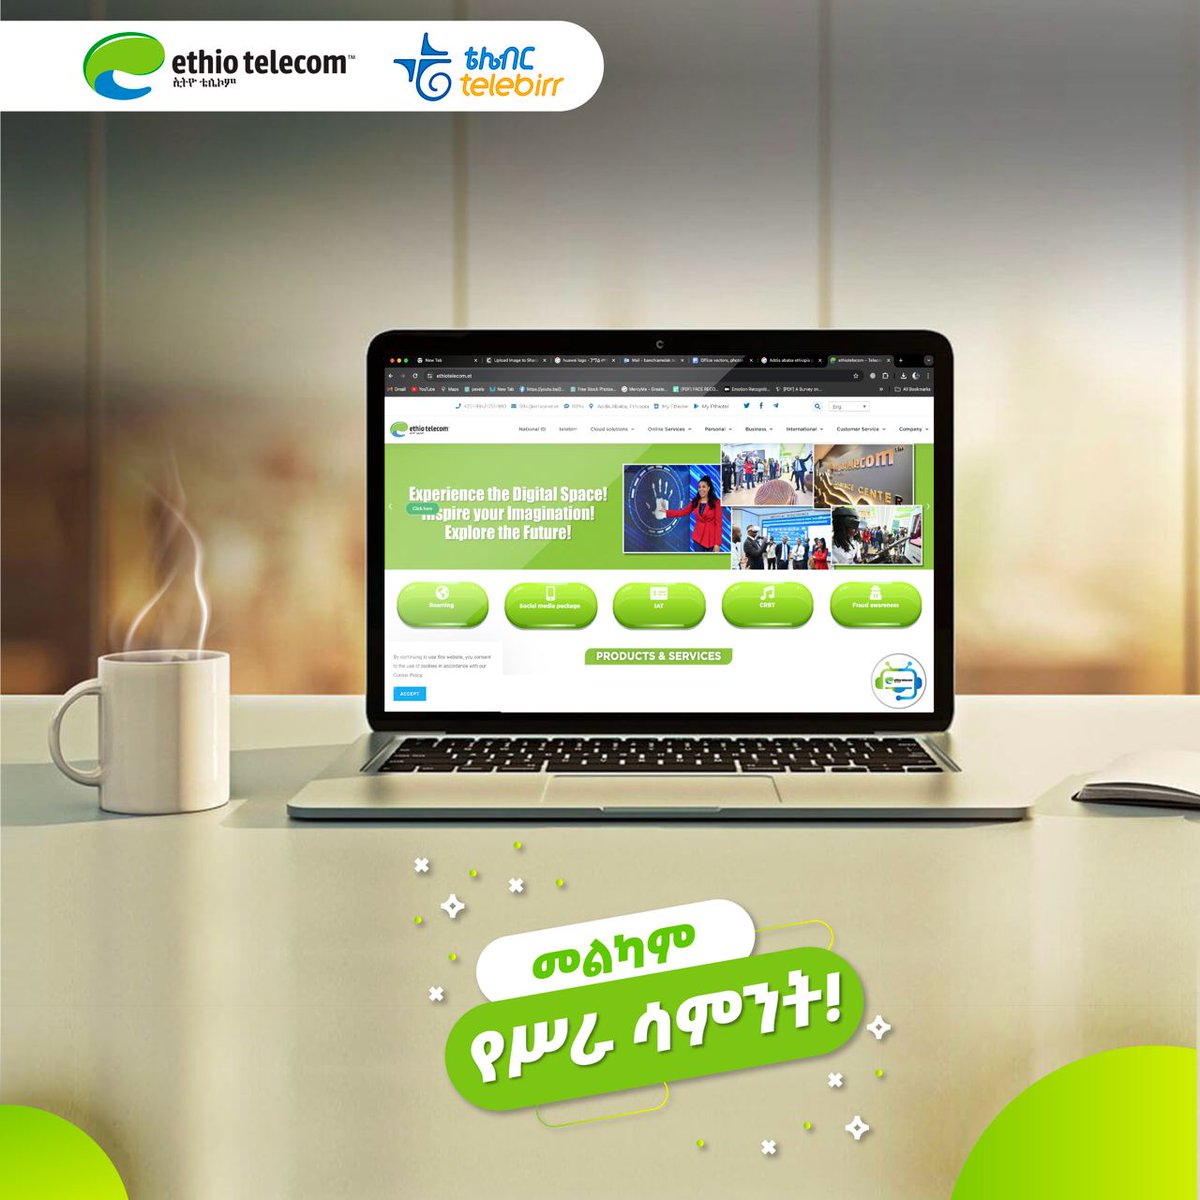 መልካም የሥራ ሳምንት ! #Monday #MondayMotivation #Ethiotelecom #telebirr #DigitalAfrica #DigitalEthiopia #RealizingDigitalEthiopia